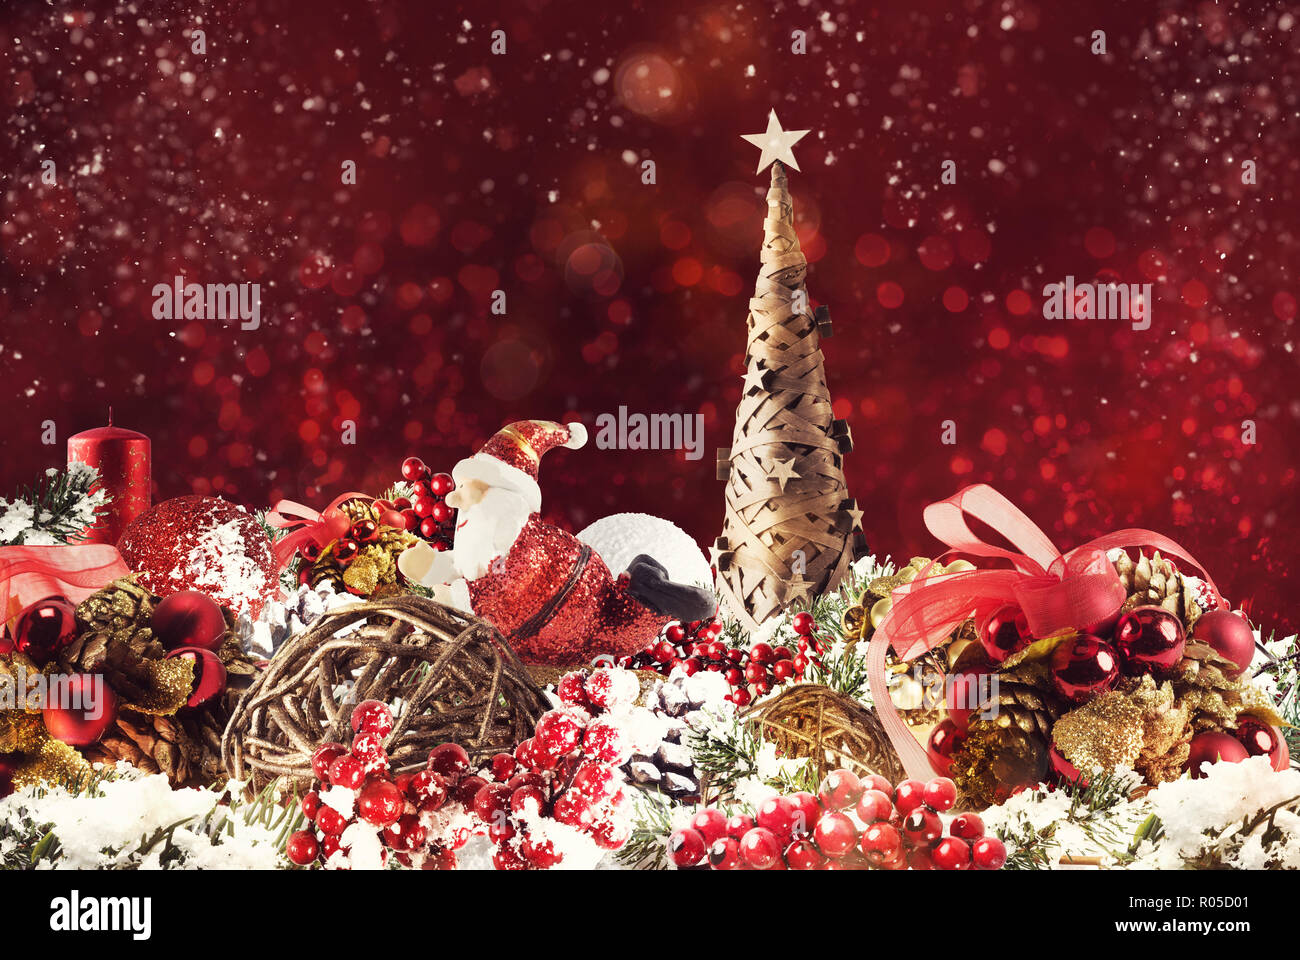 Weihnachten Hintergrund Konzept. Schimmernde Weihnachtsdekorationen mit Baum, Weihnachtsmann und Kerzen Stockfoto